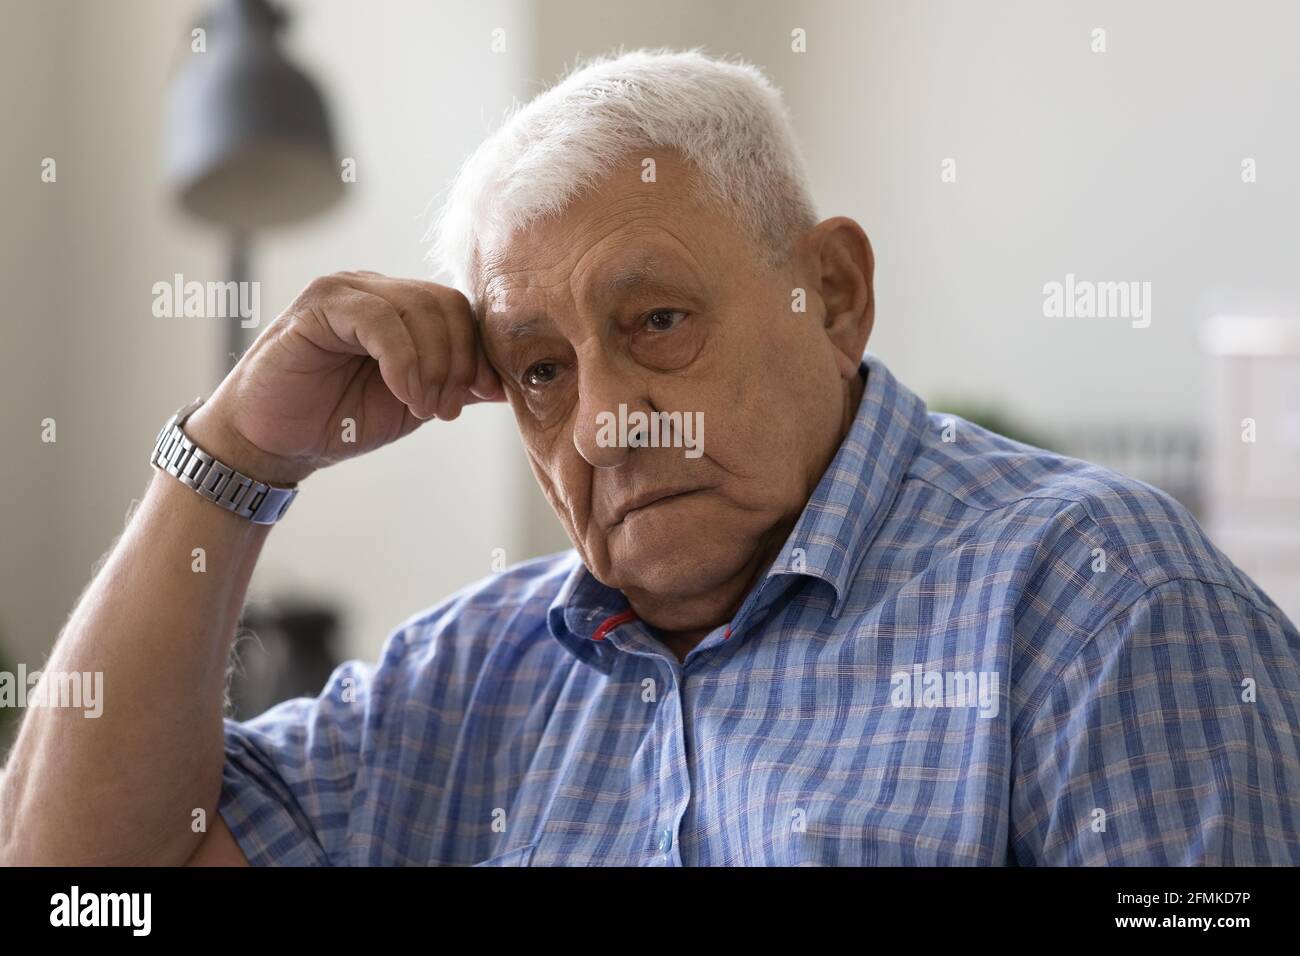 Upset elderly male feel desperate tired having mental health problems Stock Photo